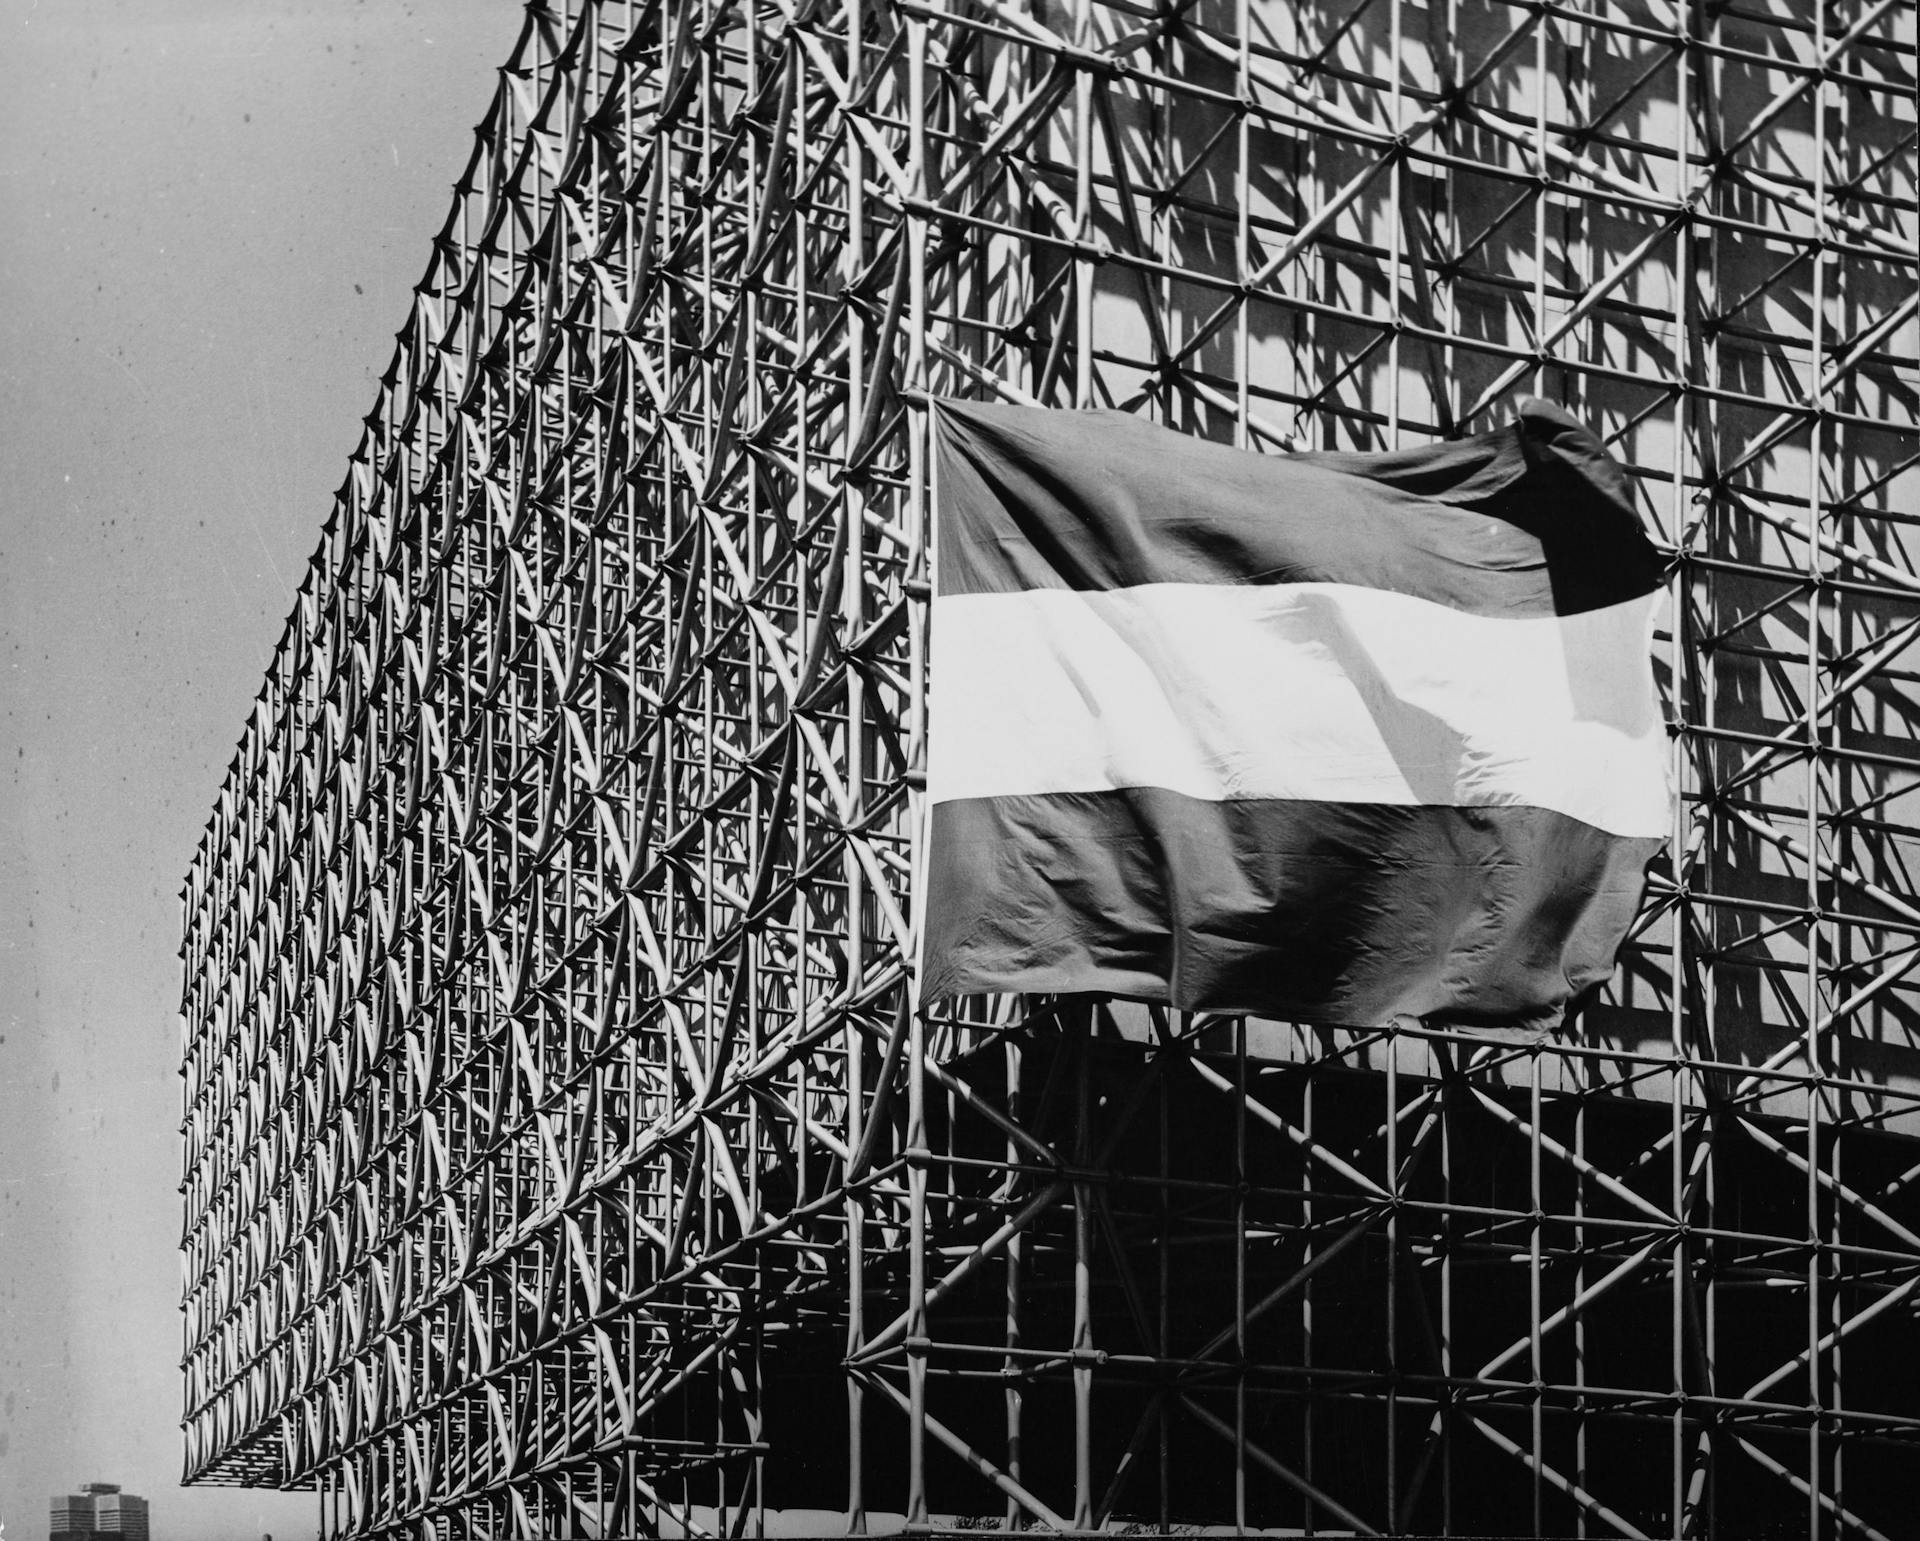  Nederlands paviljoen Wereldtentoonstelling Montreal, Canada, 1967. Architecten: W. Eijkelenboom en  A. Middelhoek. Fotograaf onbekend. Collectie Nationaal Archief. 